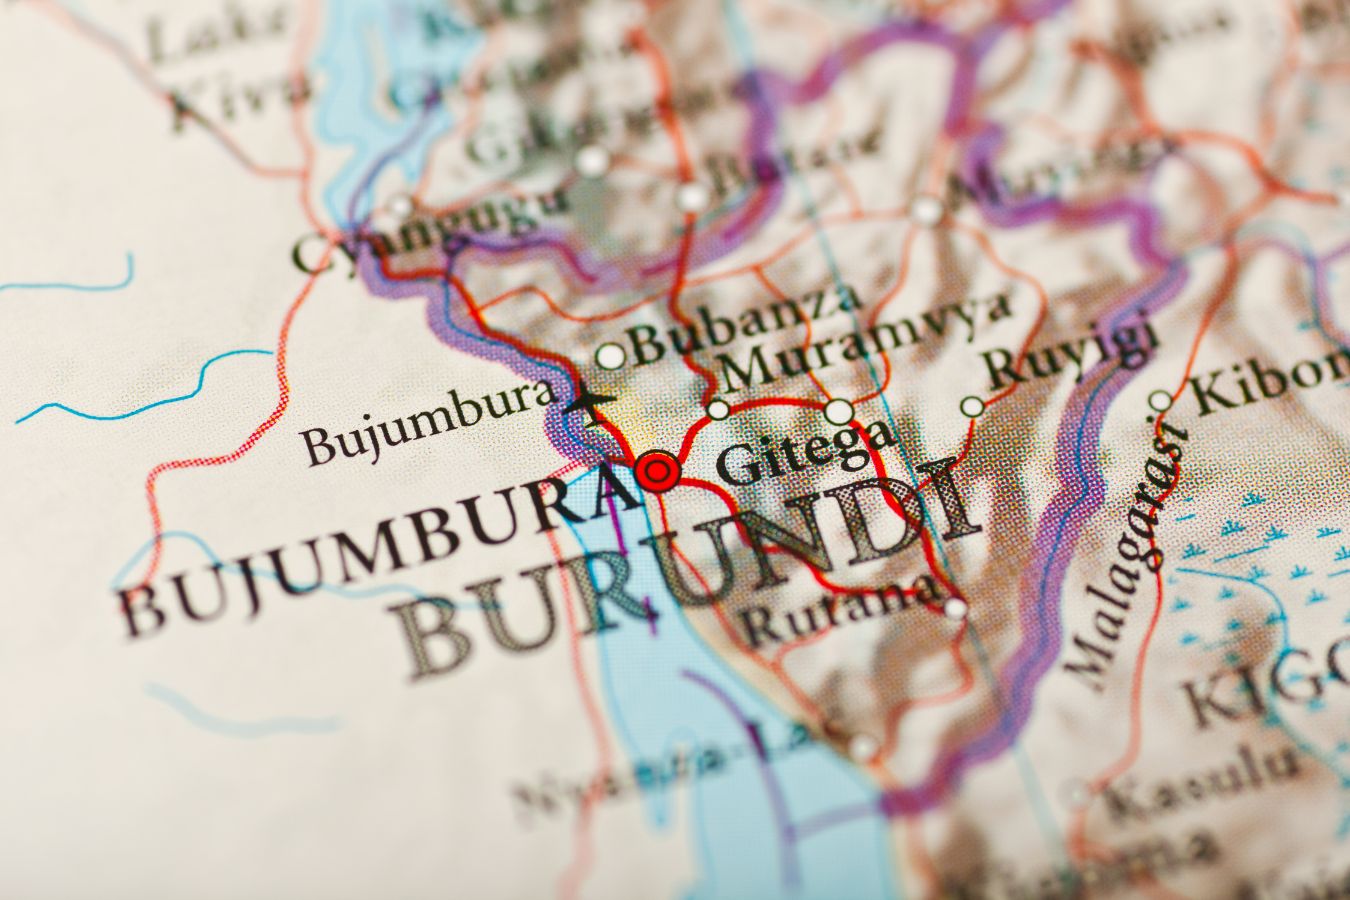 Coffee Origins: Burundi